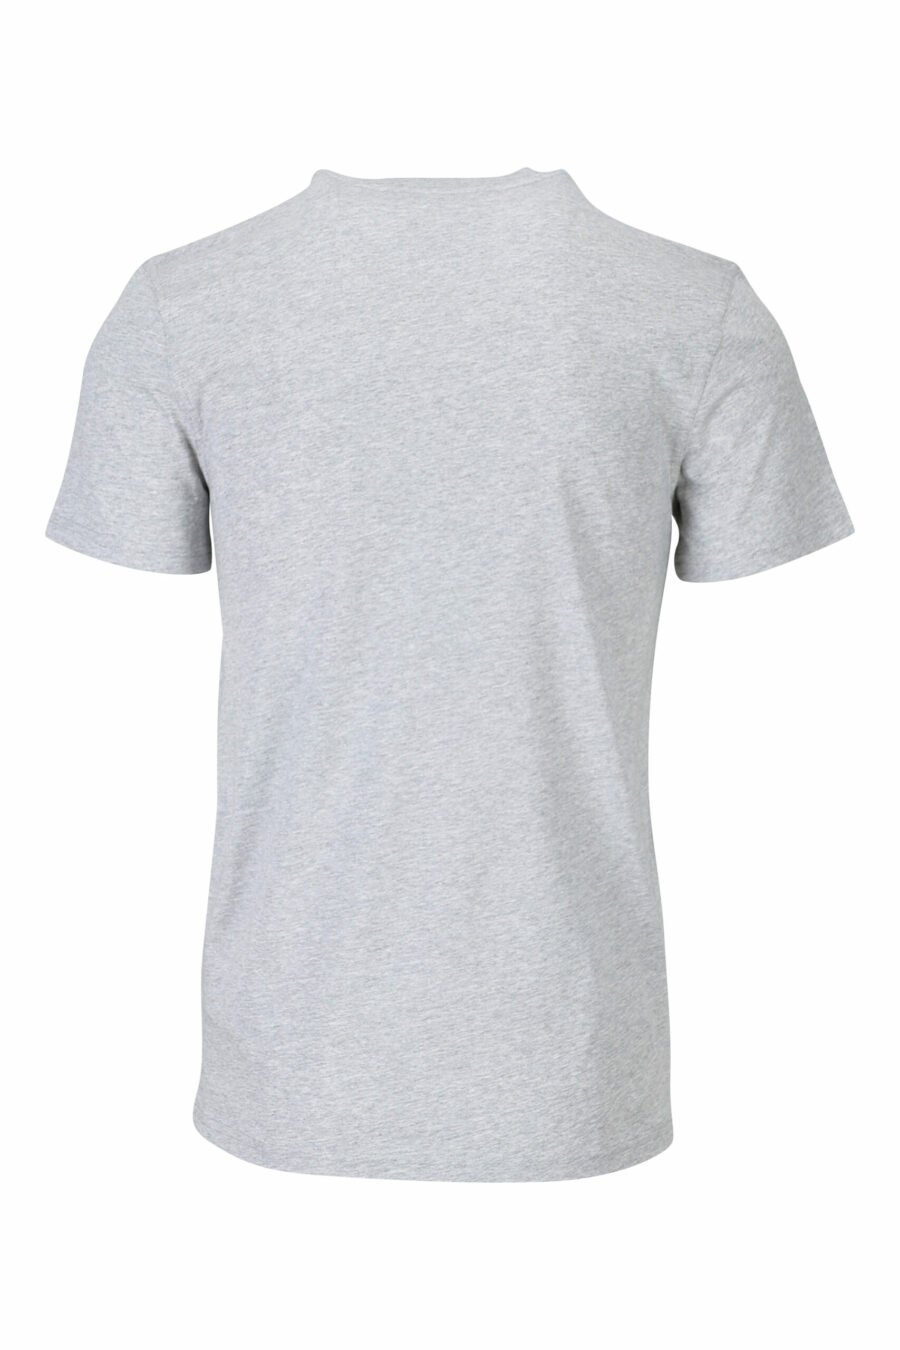 Camiseta gris con maxilogo "teddy" sastre - 667113124766 1 scaled